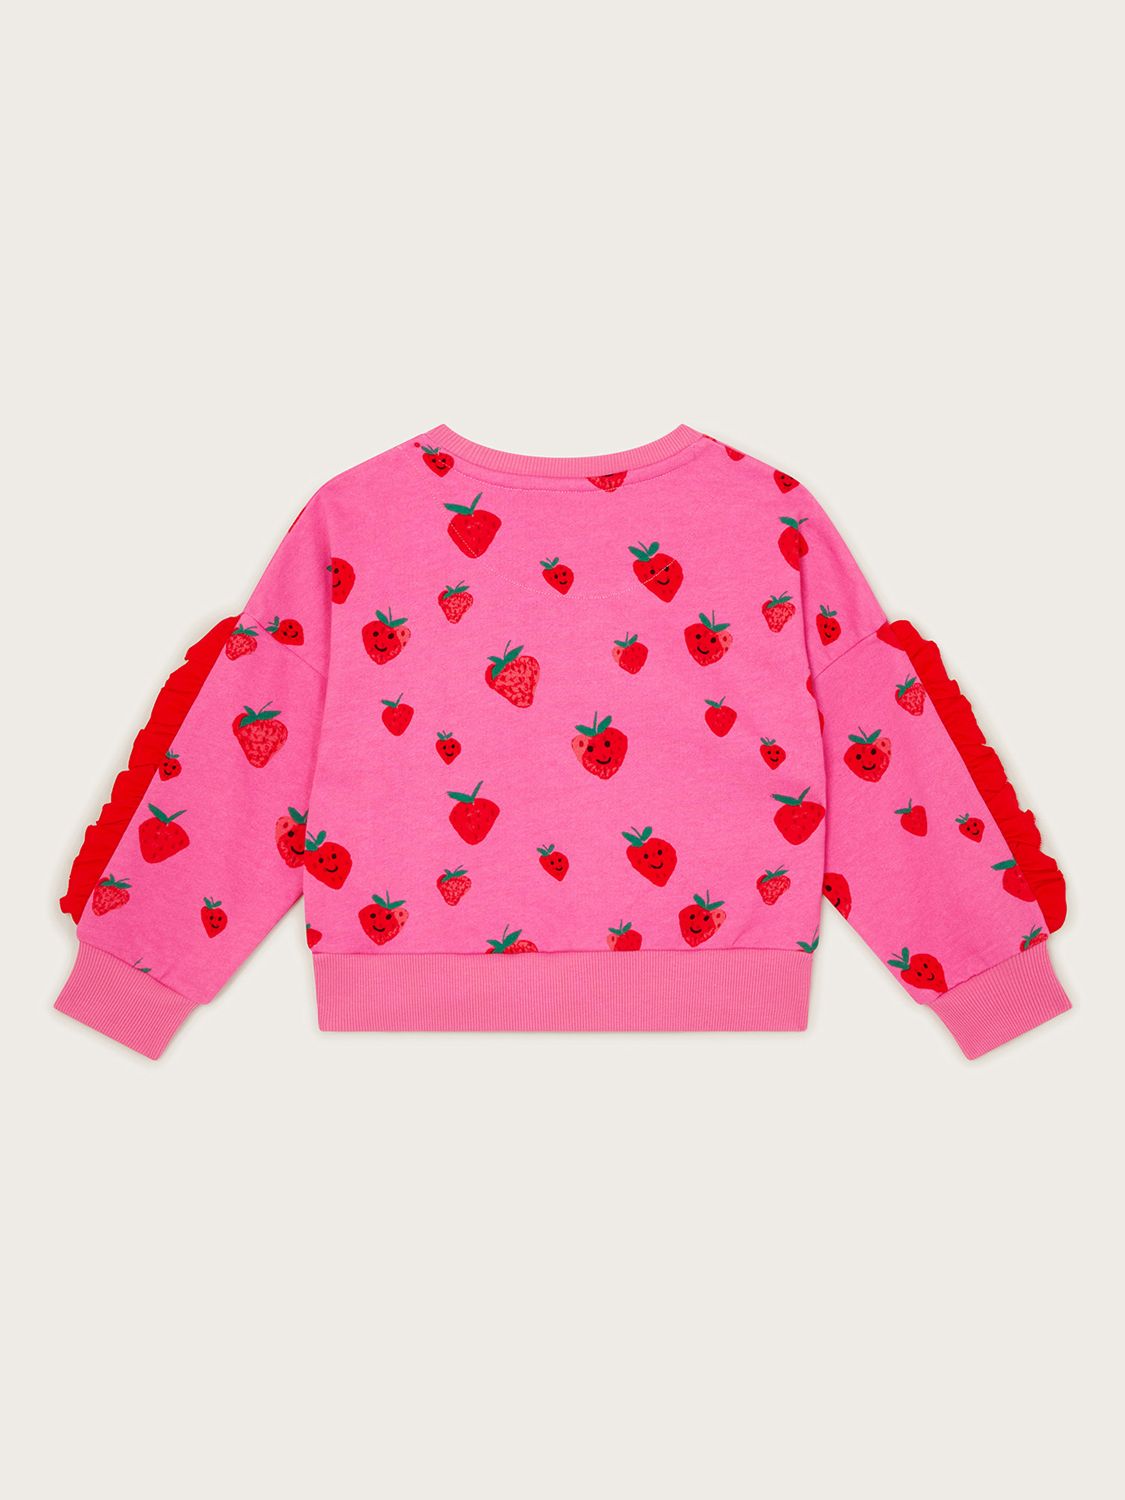 Monsoon Kids' Sally Strawberry Ruffle Sweatshirt, Pink, 3-4 years